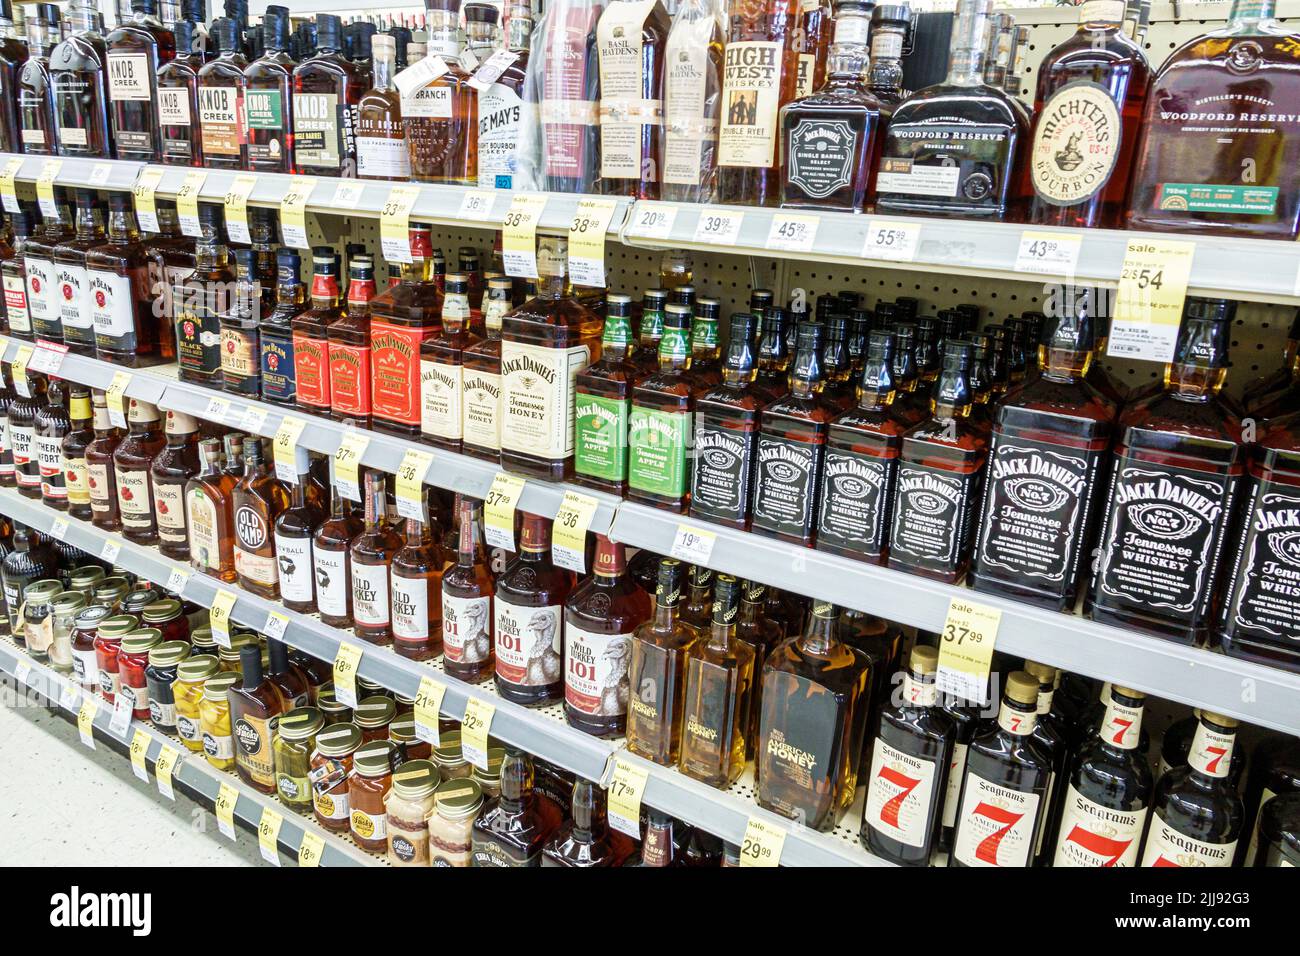 Miami Beach Florida, Walgreens Spirituosenladen im Inneren Regal Regale Flaschen, Jack Daniel's Whisky Marken alkoholische Getränke Verkauf Display, in einem Stockfoto